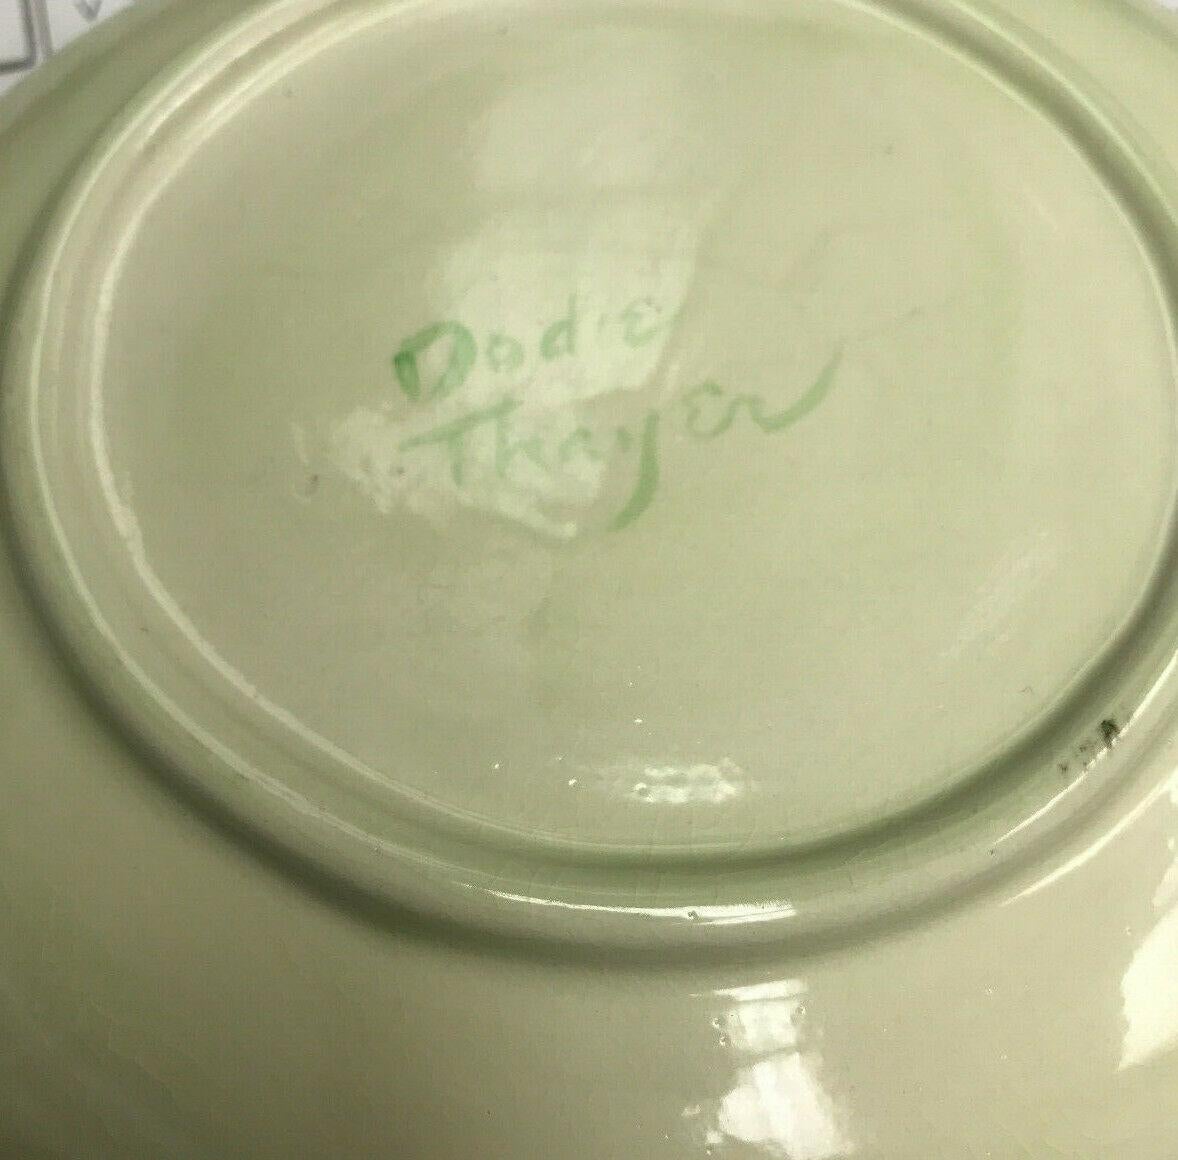 Description: 10 Dodie Thayer Jupiter lettuce leaf earthenware porcelain handcrafted luncheon plates. Signed 